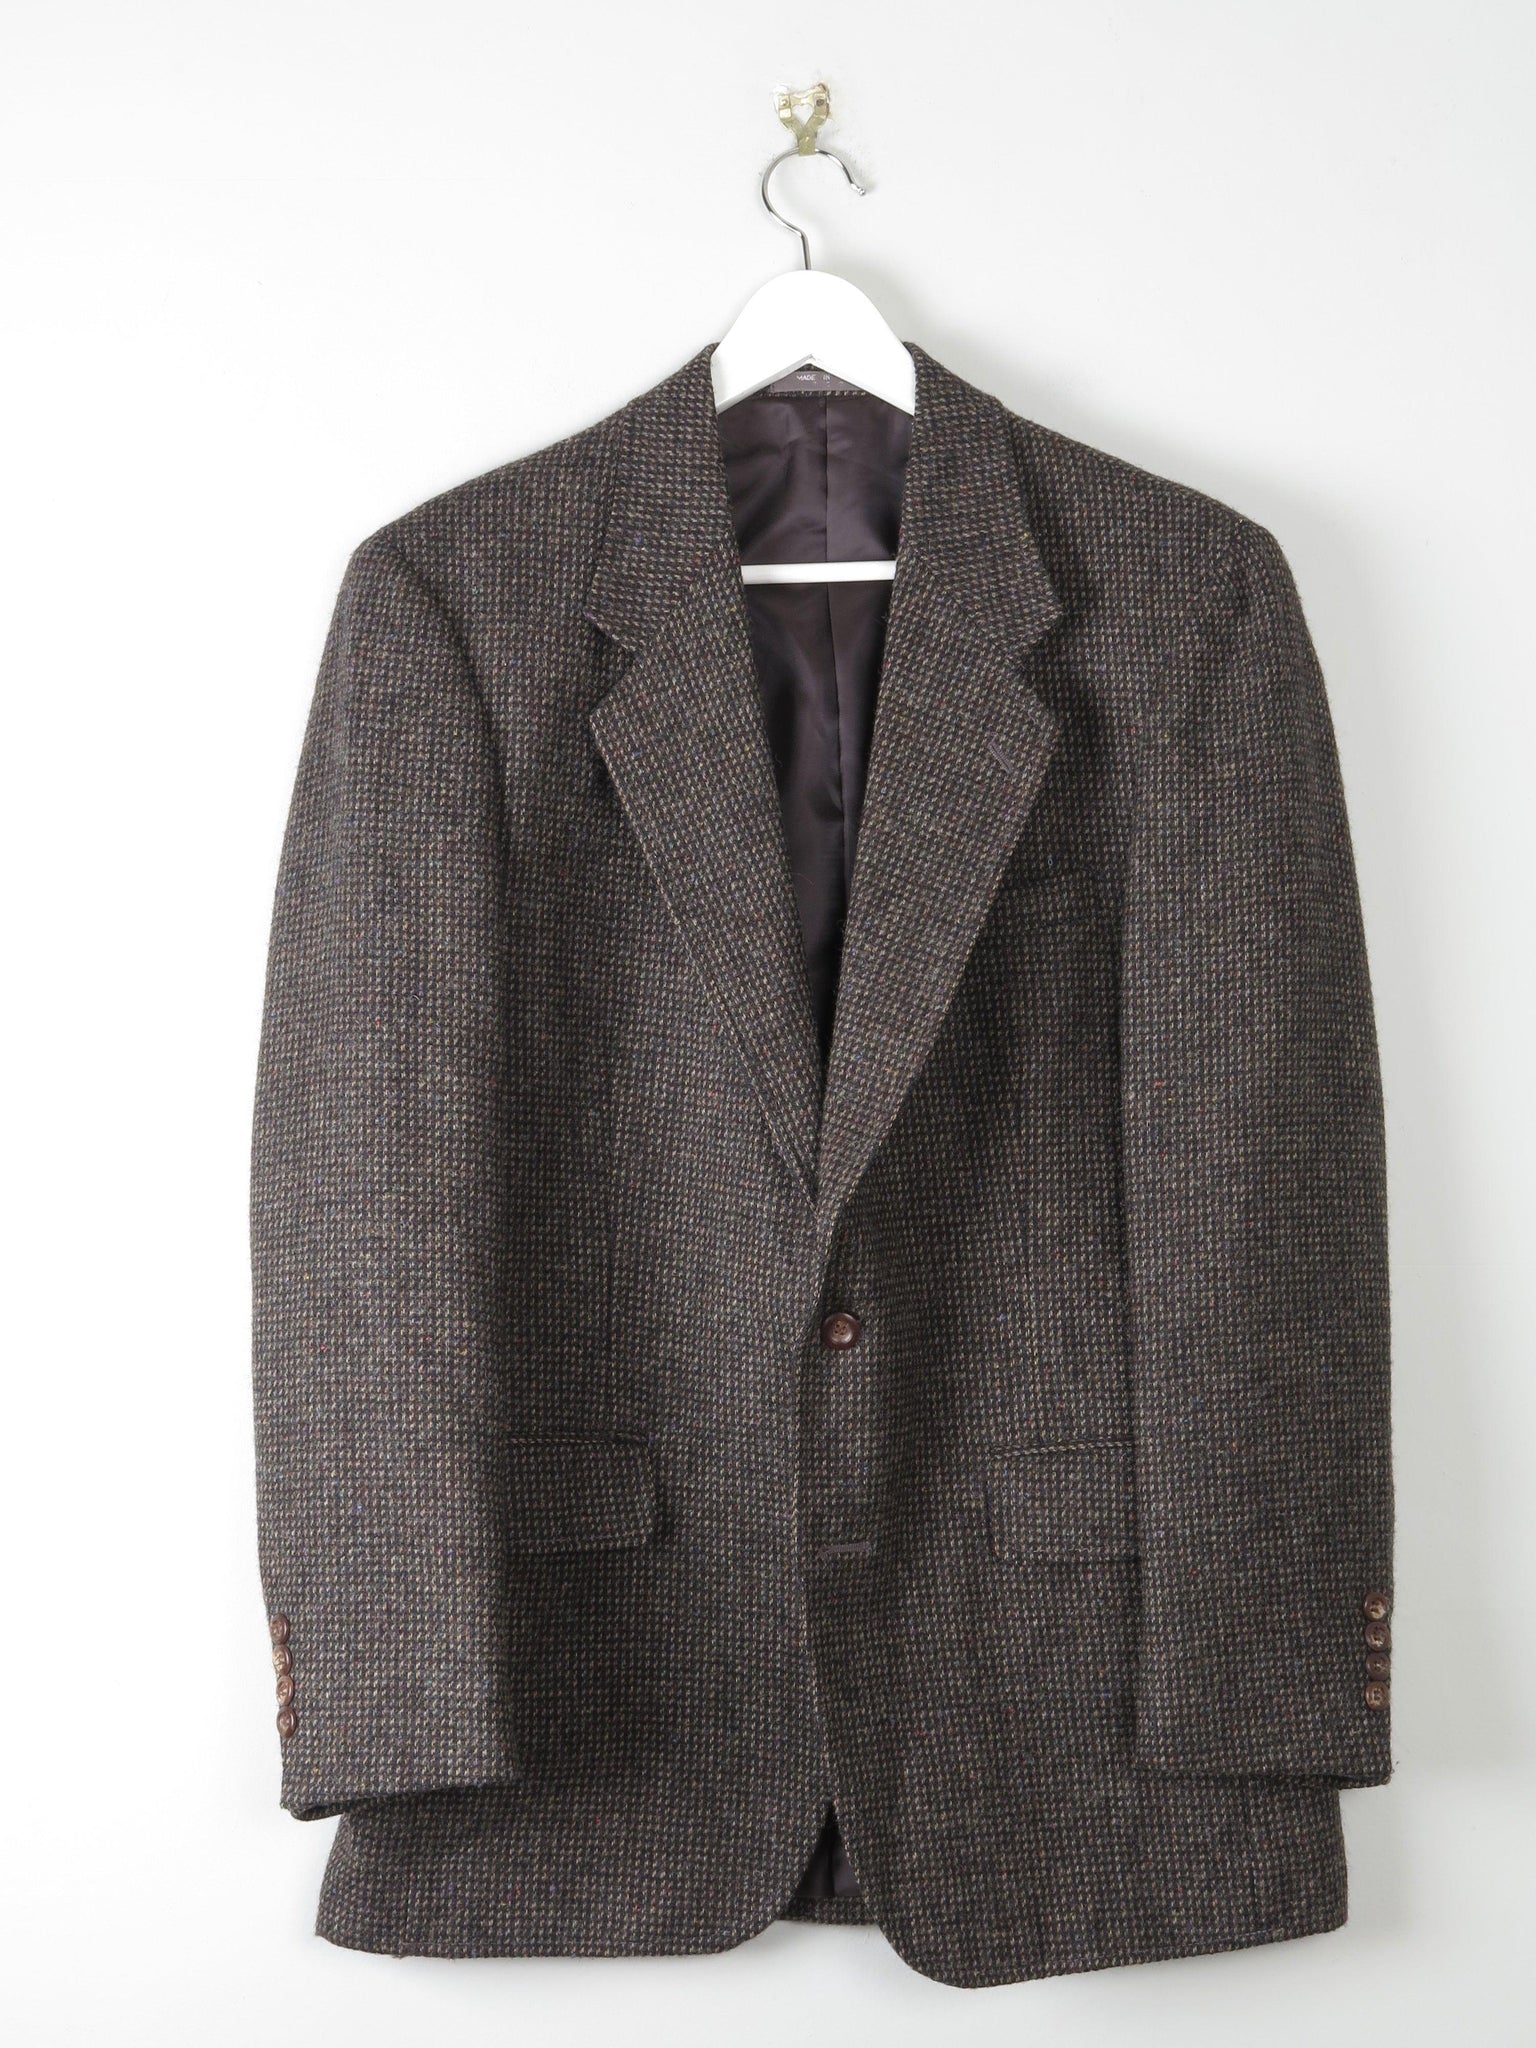 Men’s Brown tweed Harris Tweed Jacket 40" - The Harlequin